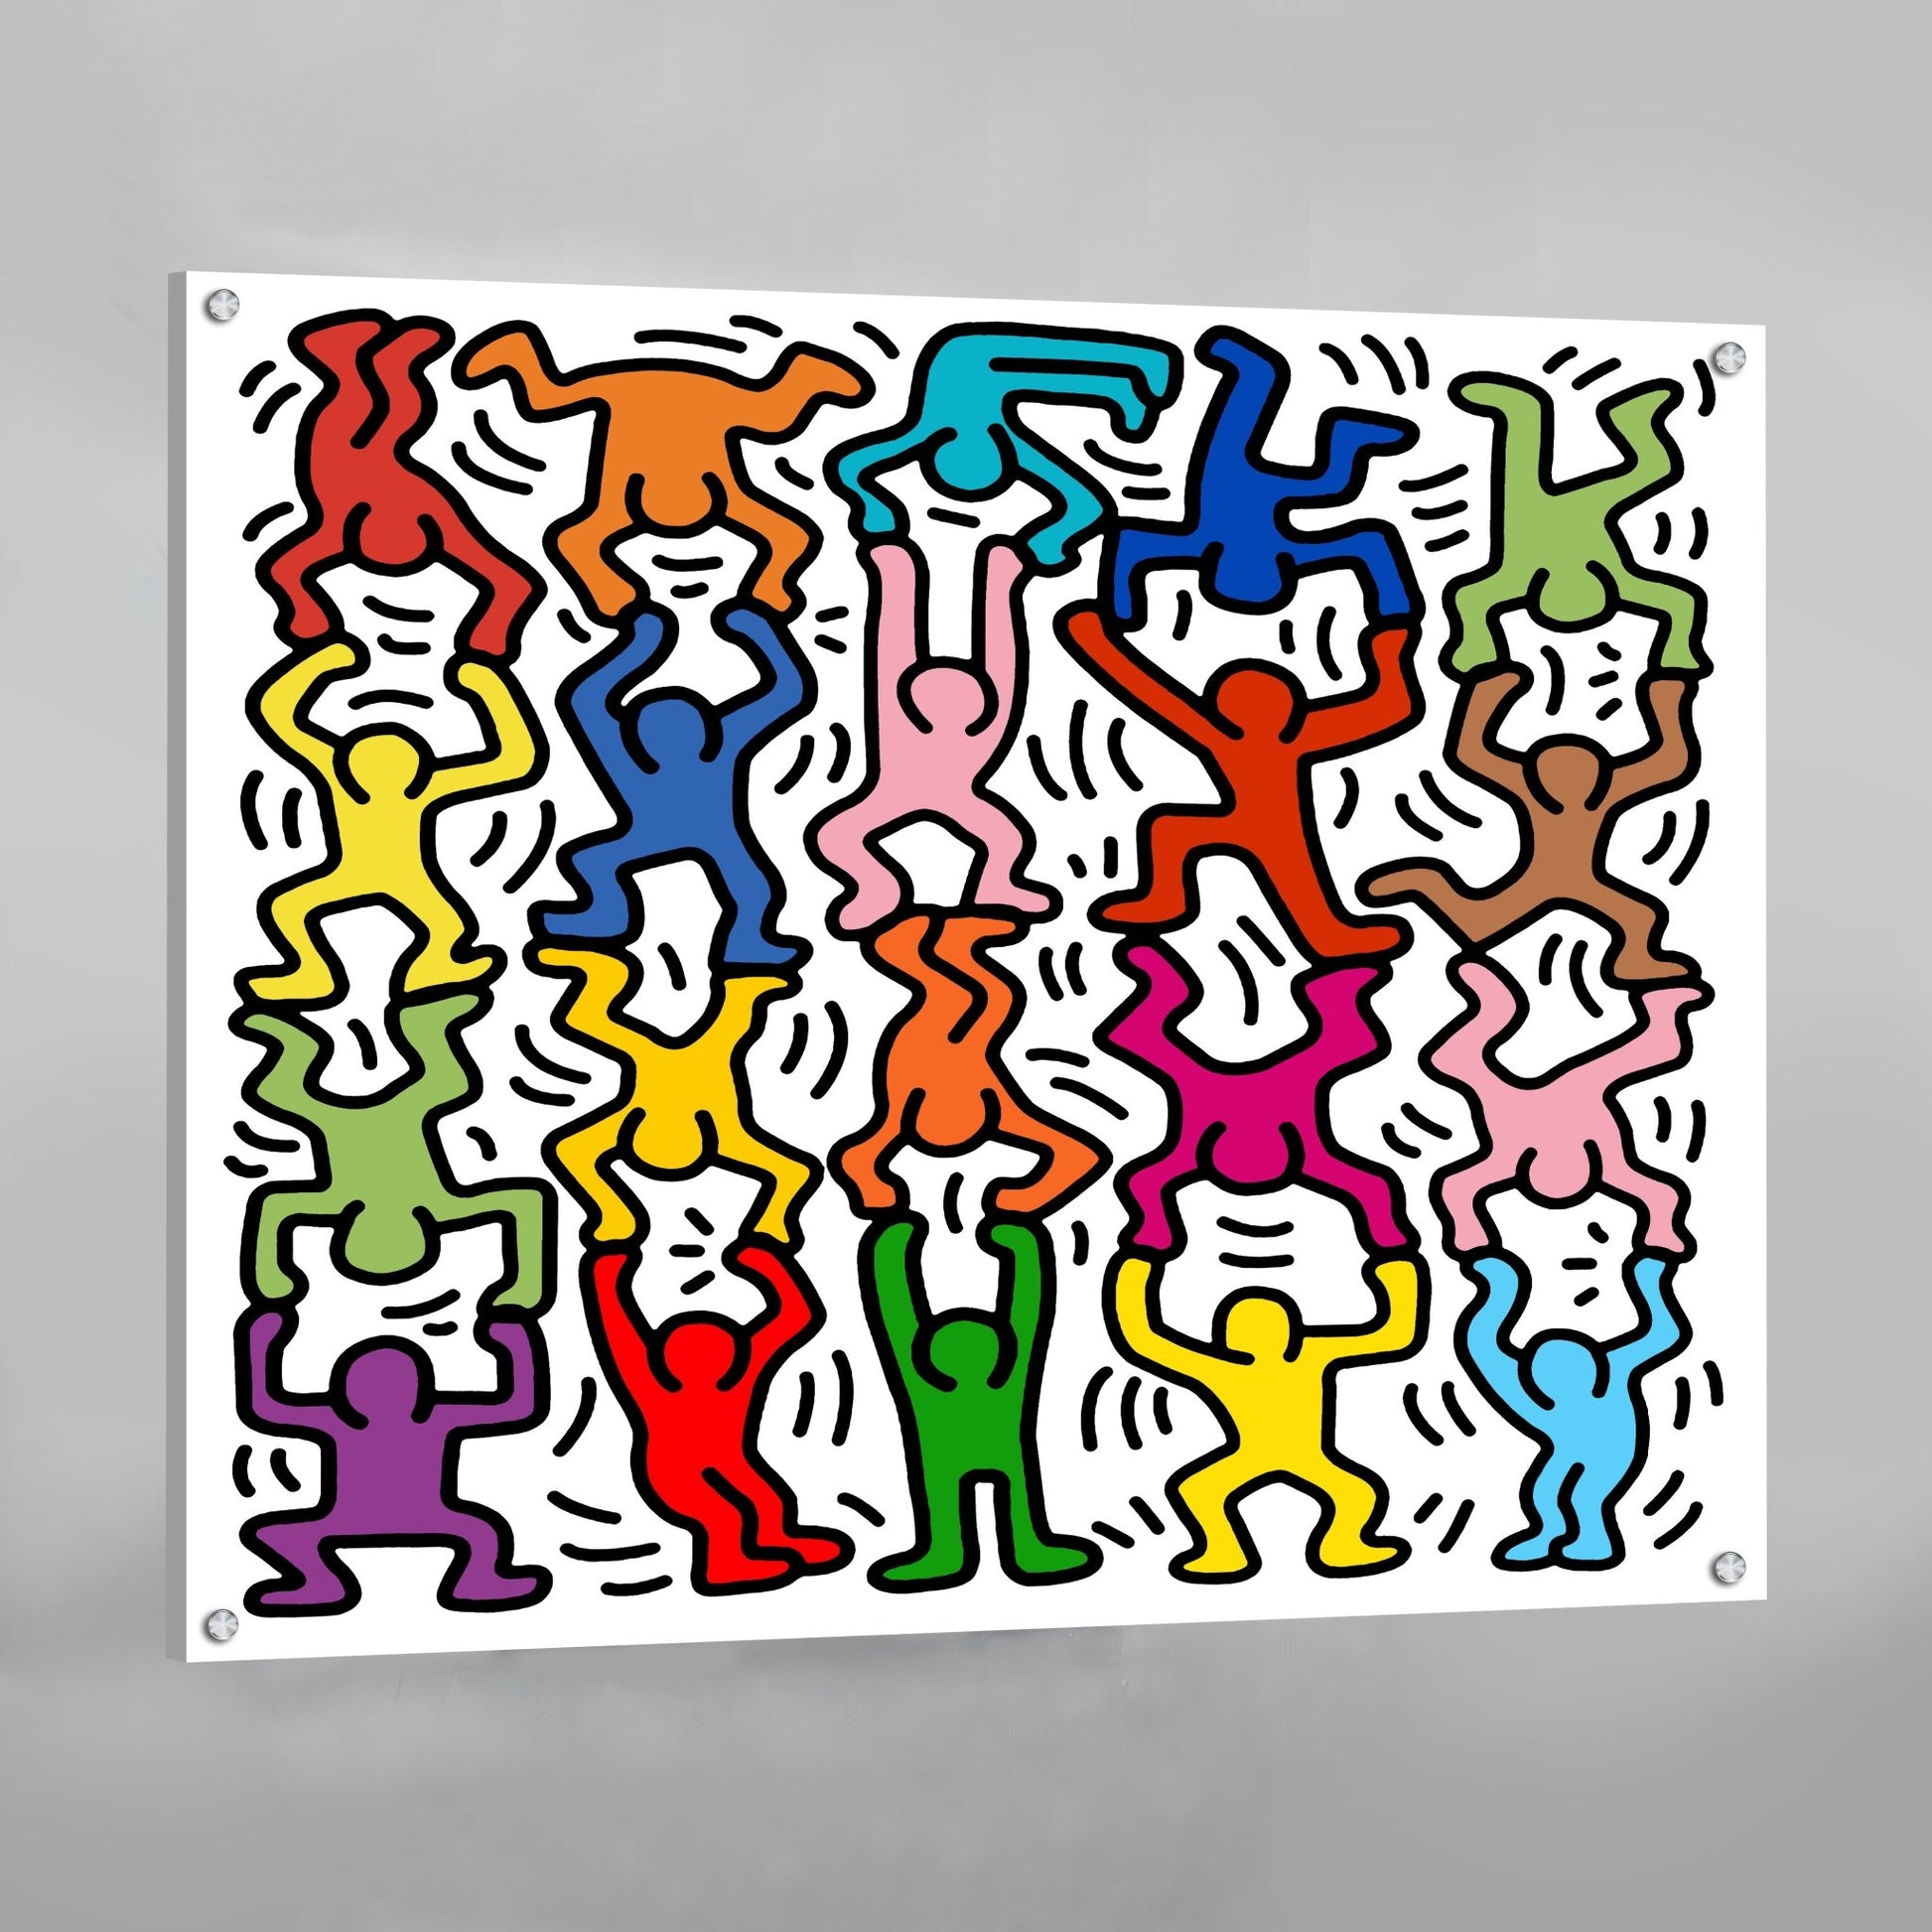 Cuadro Keith Haring - La Casa Del Cuadro